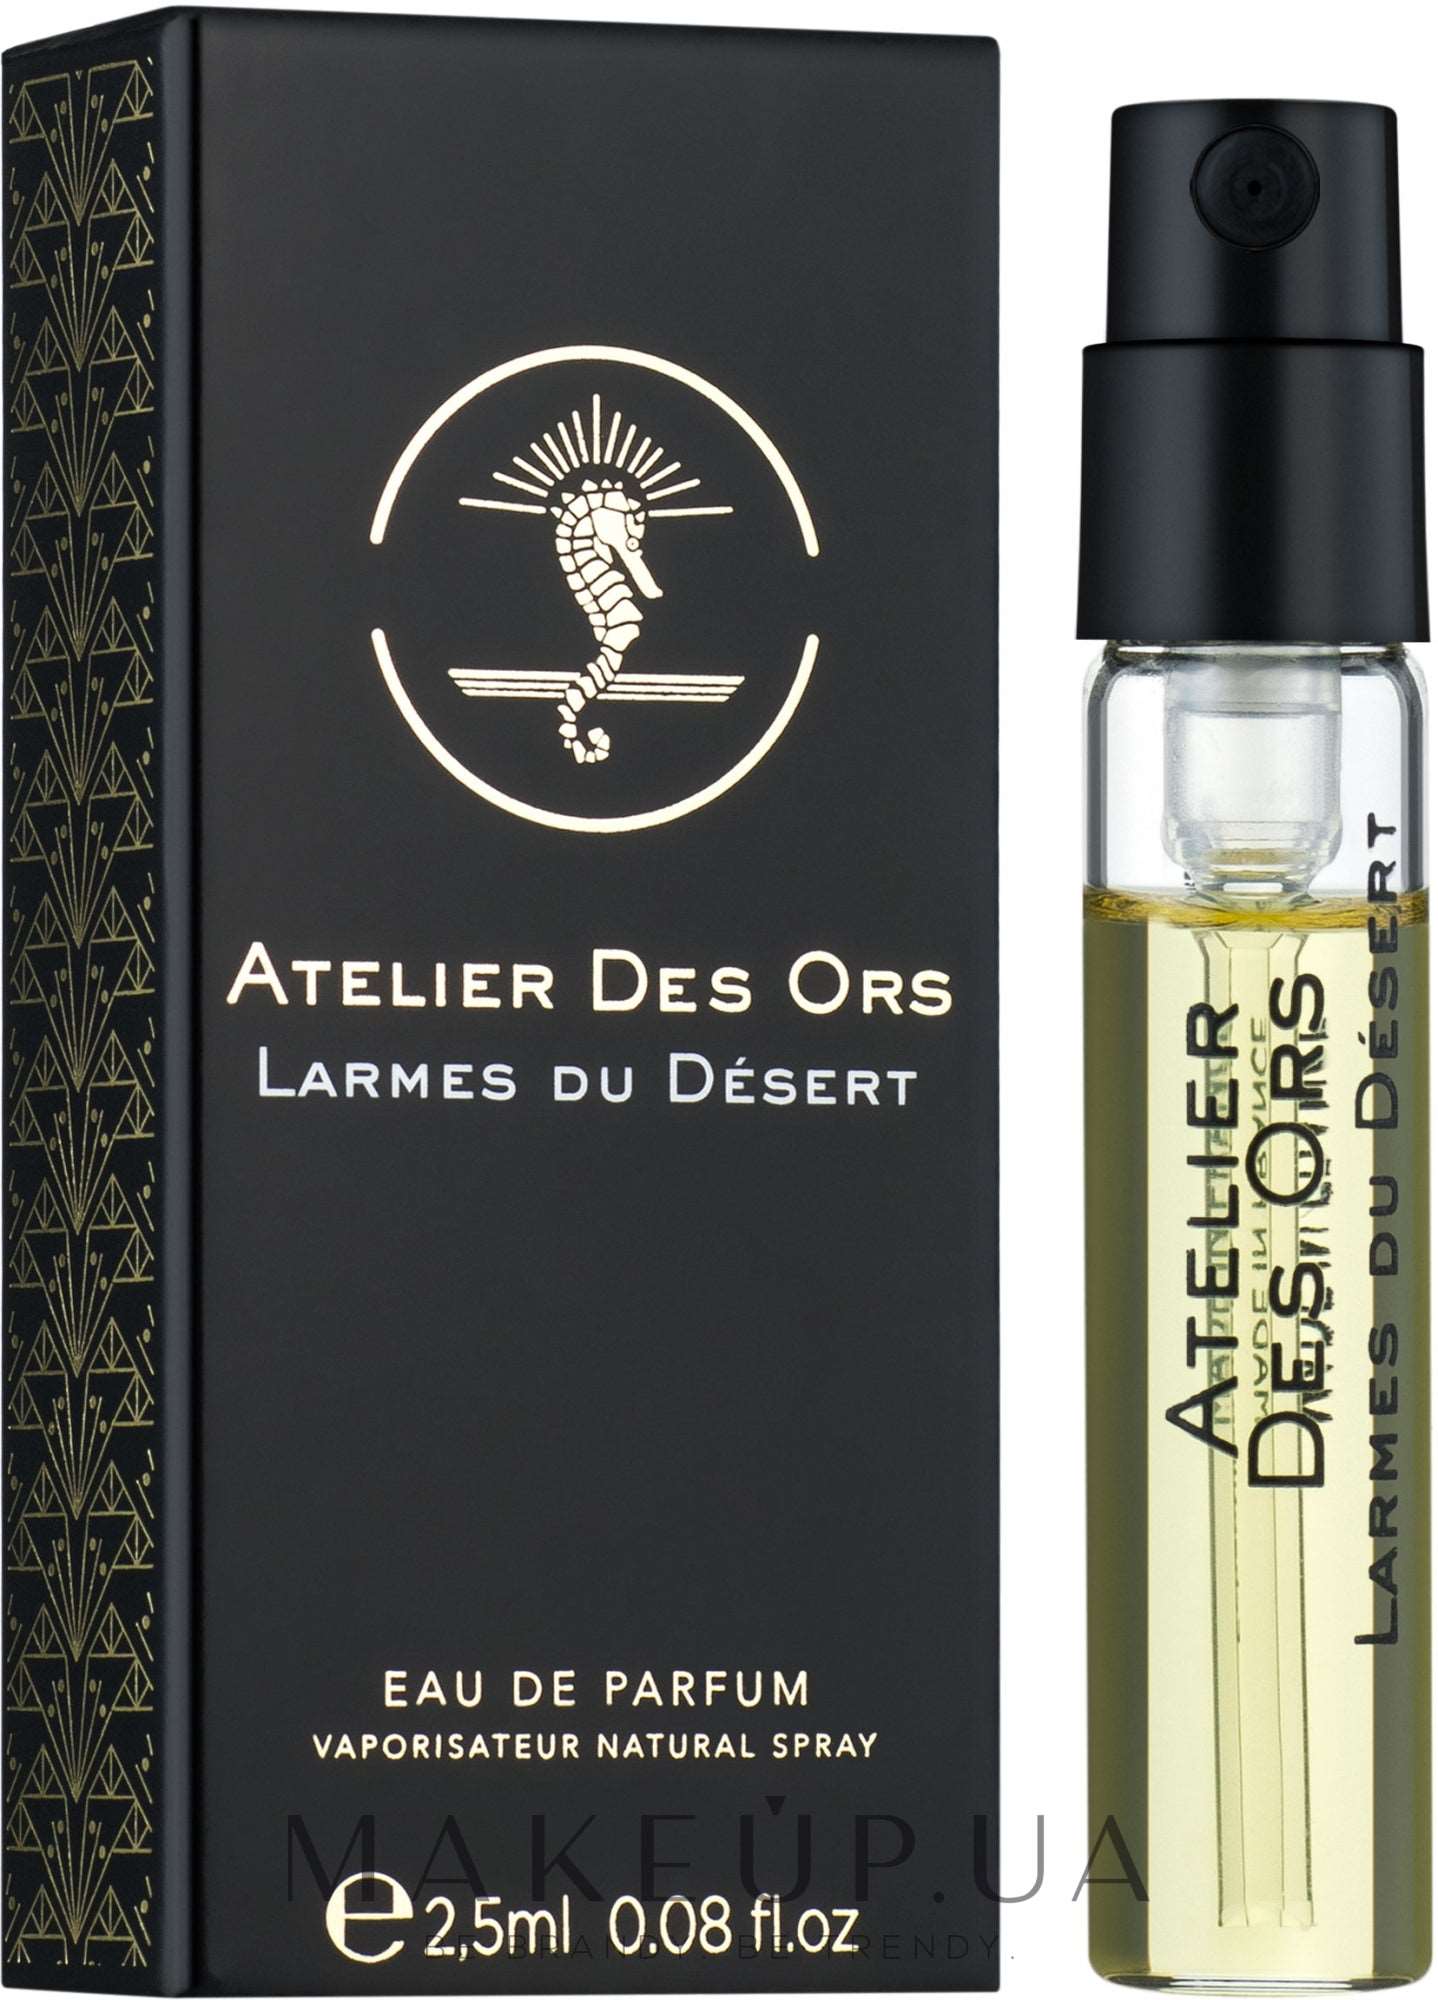 Atelier Des Ors Larmes du Desert 2.5 ml 0.08 fl. oz. Hivatalos parfüm minták